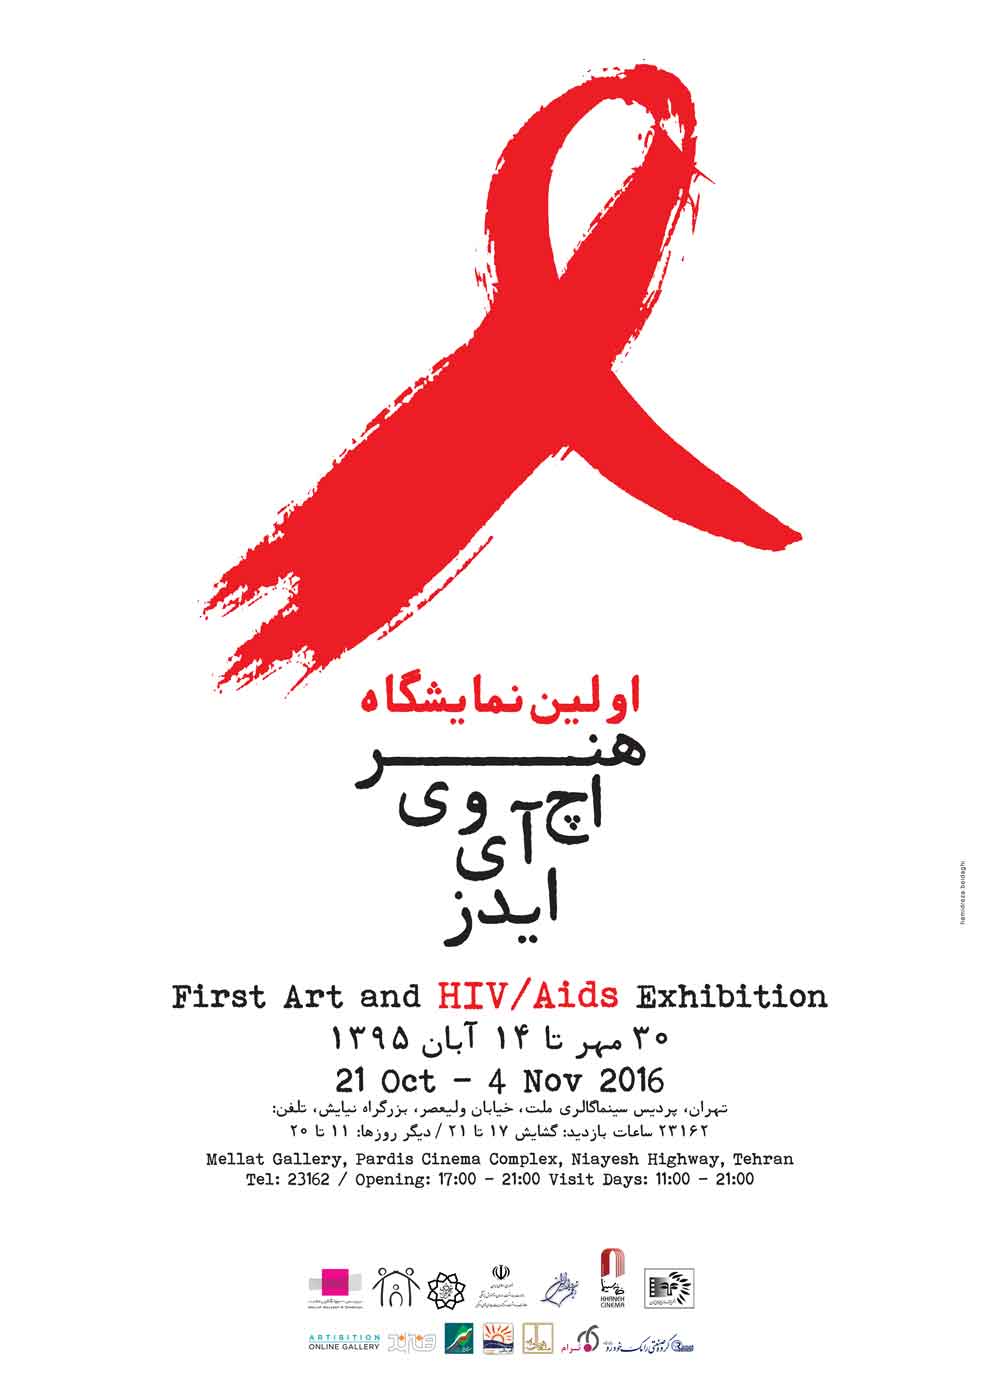 اولین نمایشگاه هنر، اچ آی وی/ ایدز